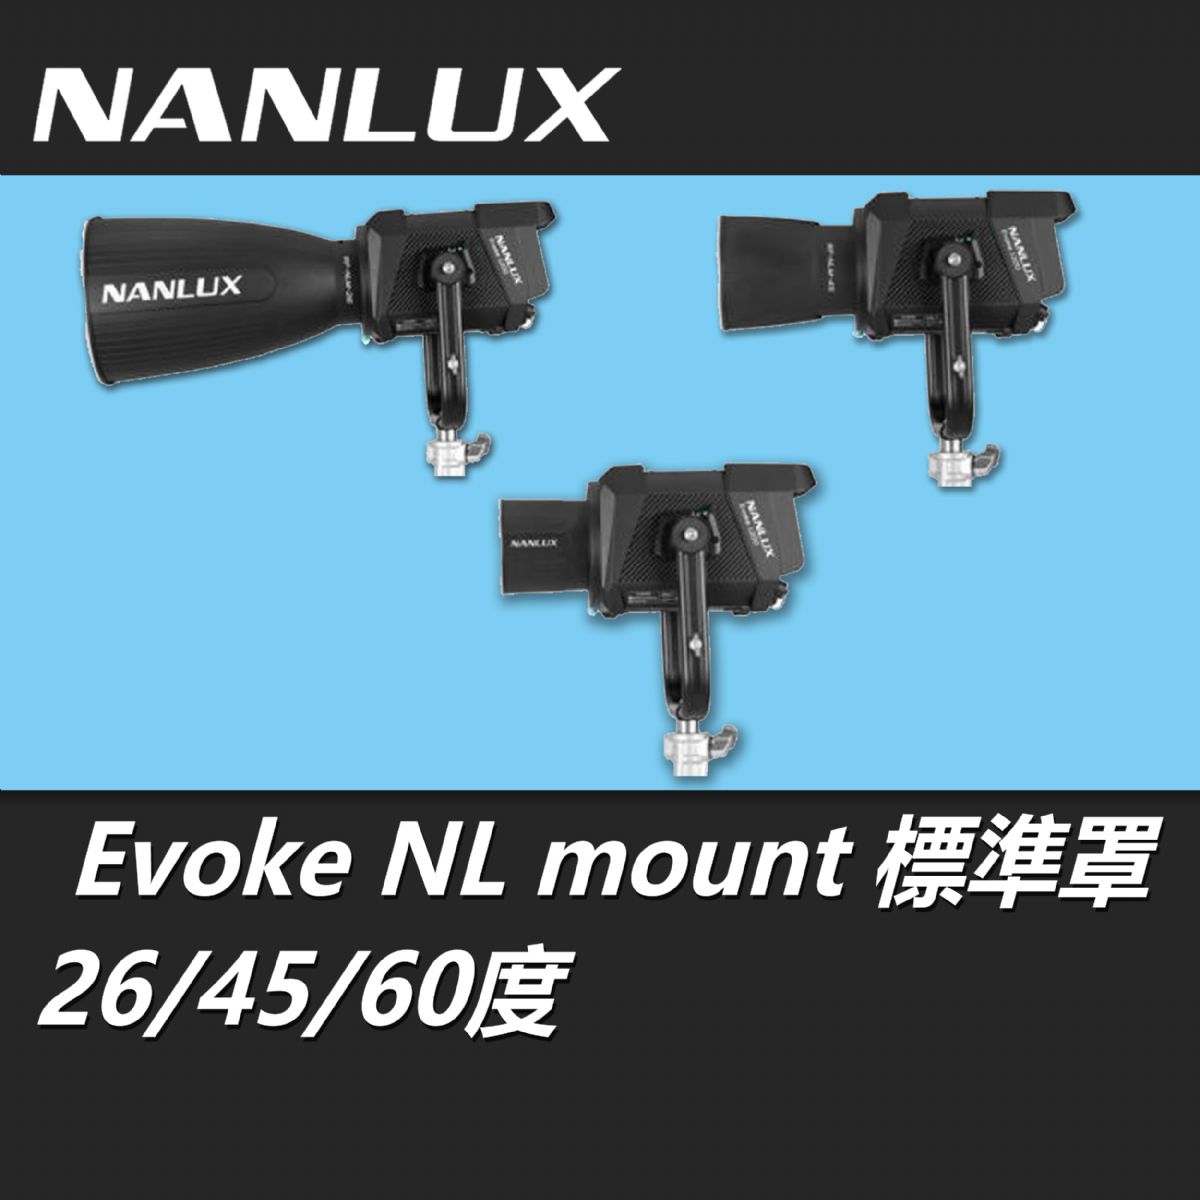 NANLUX Evoke NL mount 標準罩26 45 60度